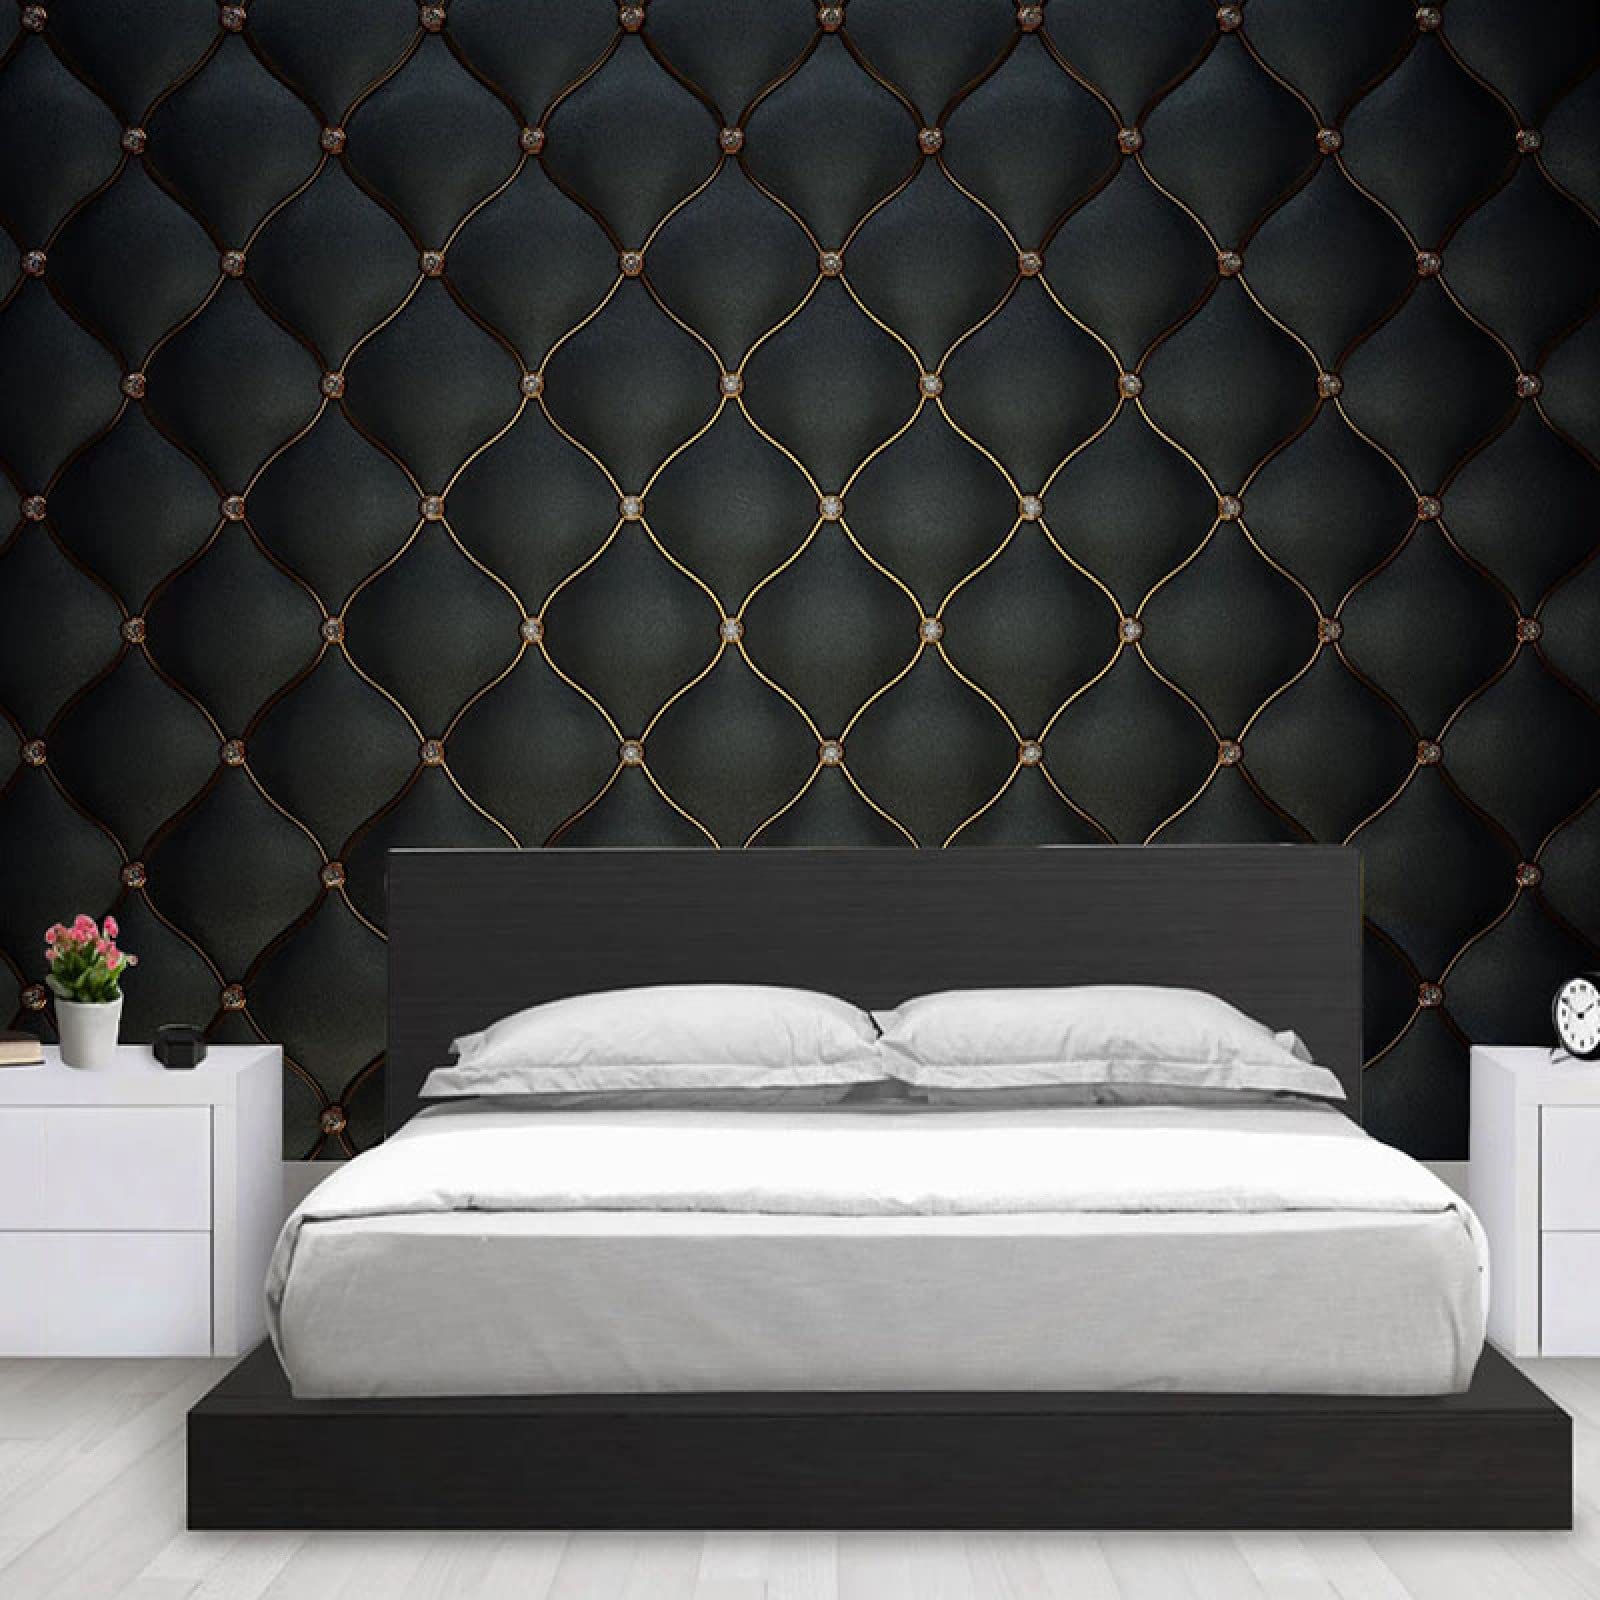 Bức tường của bạn chưa bao giờ trông đẹp đến thế! Modern Photo Wallpaper 3D Black Luxury Mural mang lại sự tươi mới cho căn phòng của bạn với họa tiết độc đáo và hiện đại. Từ những gam màu tối đến những gam màu sang trọng, bạn sẽ tìm thấy một bức tường ưng ý với chúng tôi.